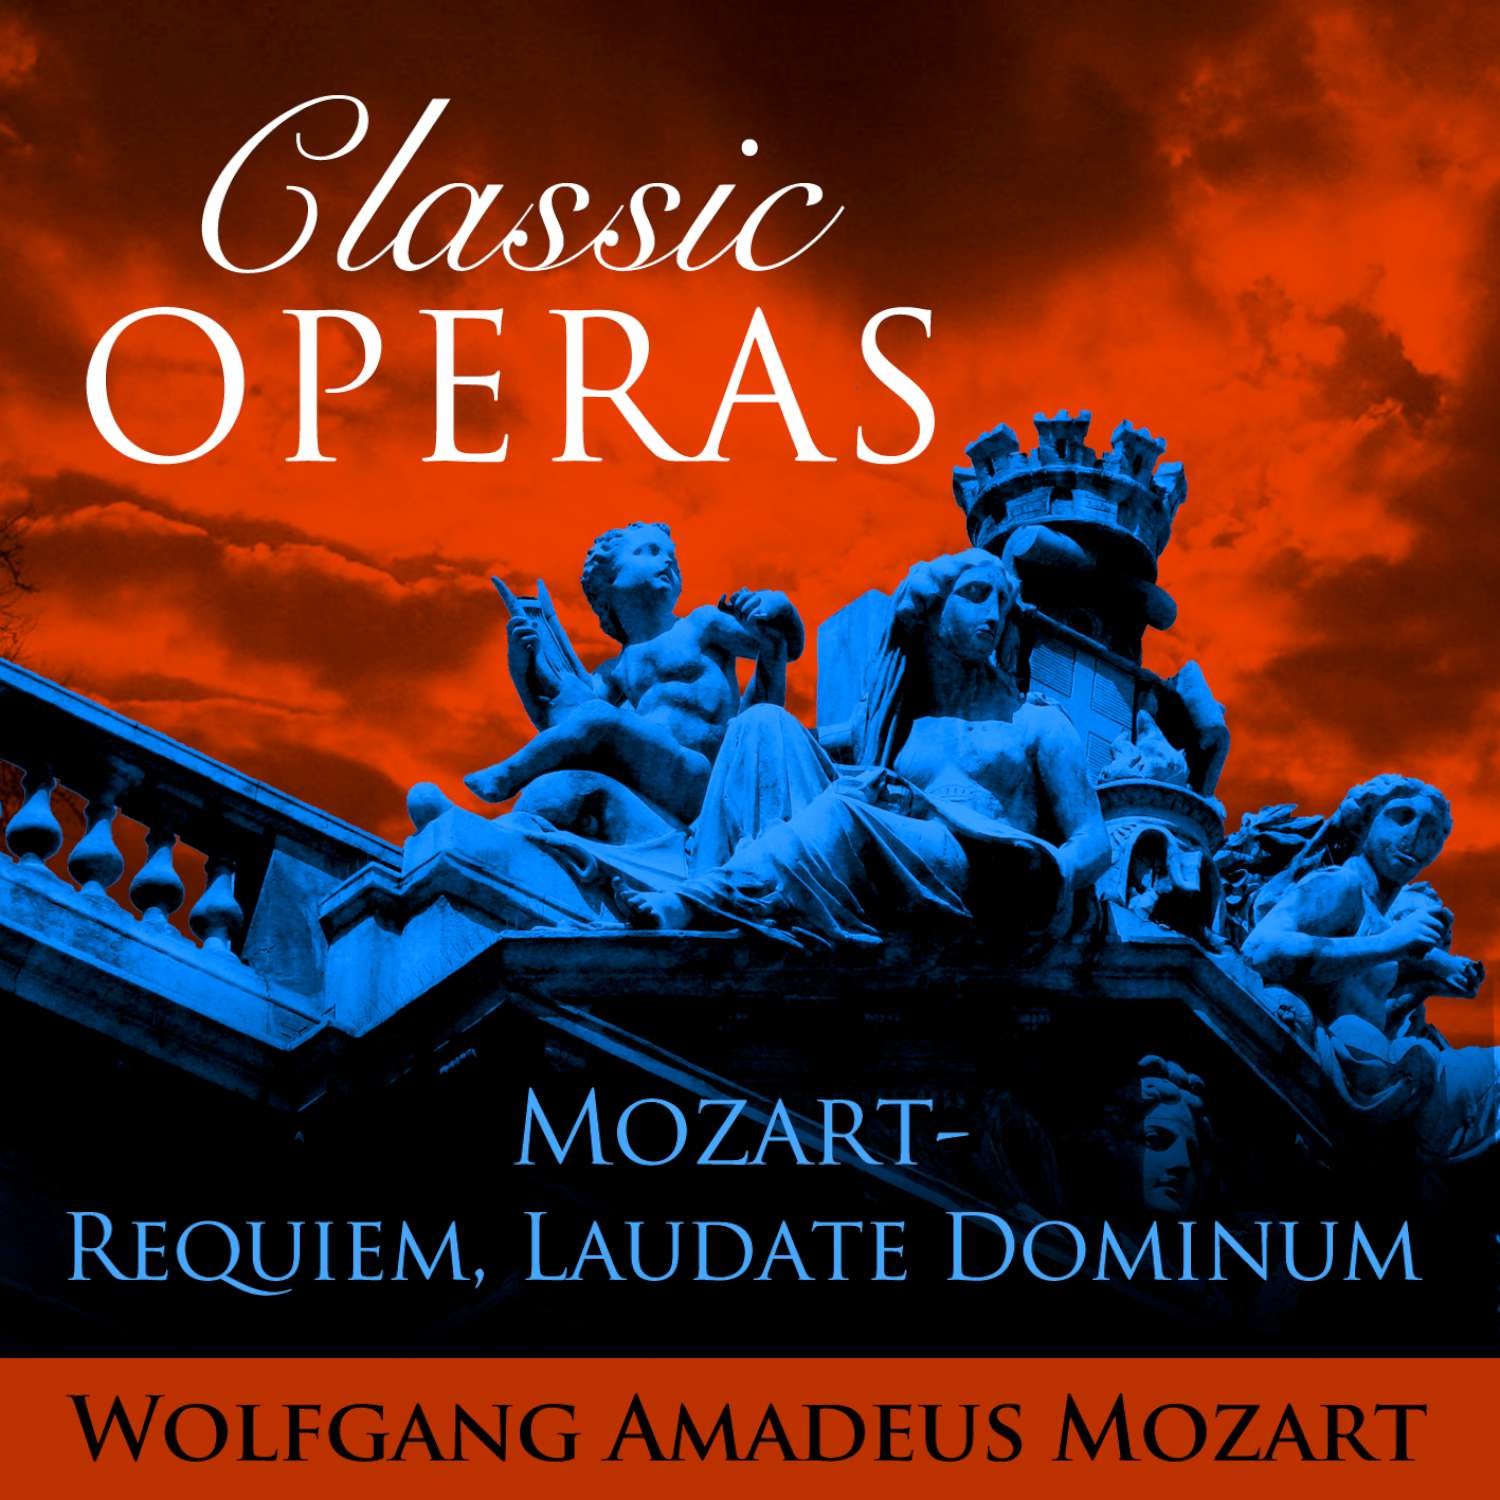 Classic Opera's - Mozart: Requiem, Laudate Dominum